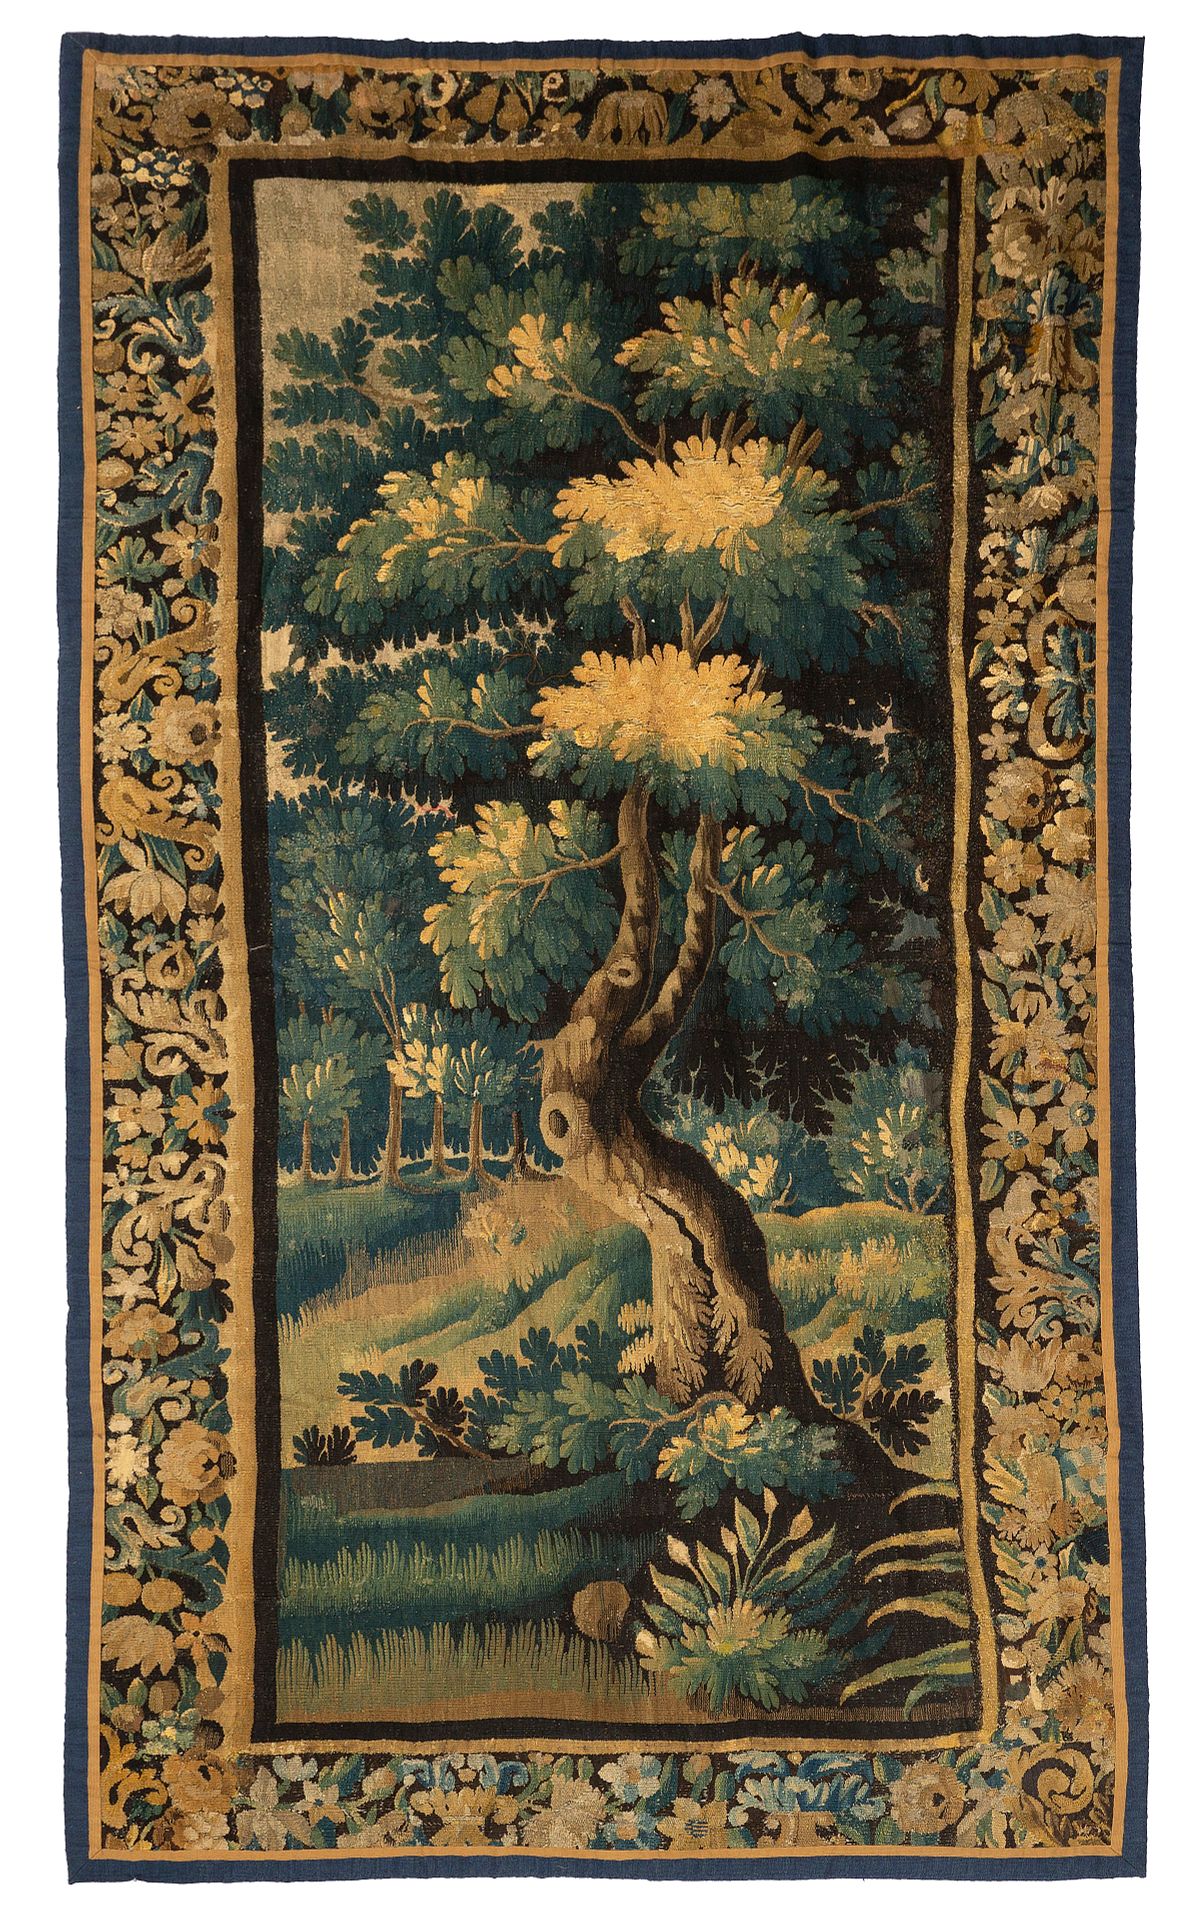 Null 奥布松挂毯，17世纪末，18世纪初

技术特点 : 羊毛和丝绸

尺寸：高度：265厘米；宽度：125厘米

一棵有几百年历史的橡树，茂盛而扭曲，是这&hellip;